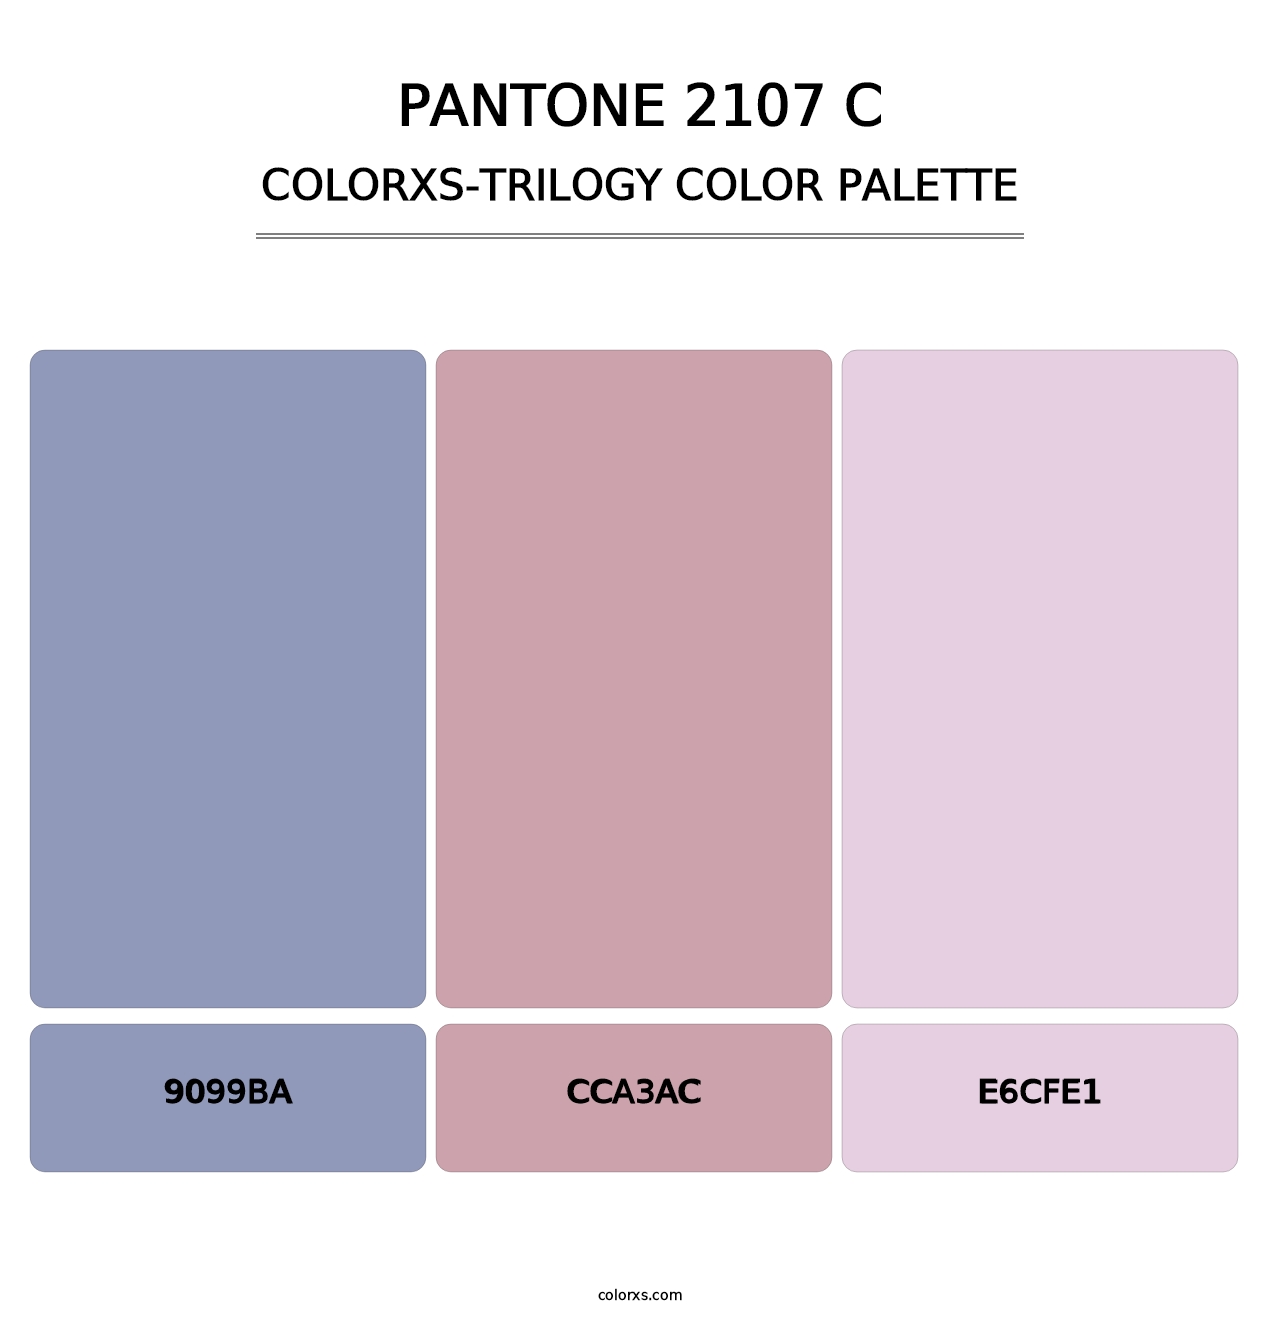 PANTONE 2107 C - Colorxs Trilogy Palette